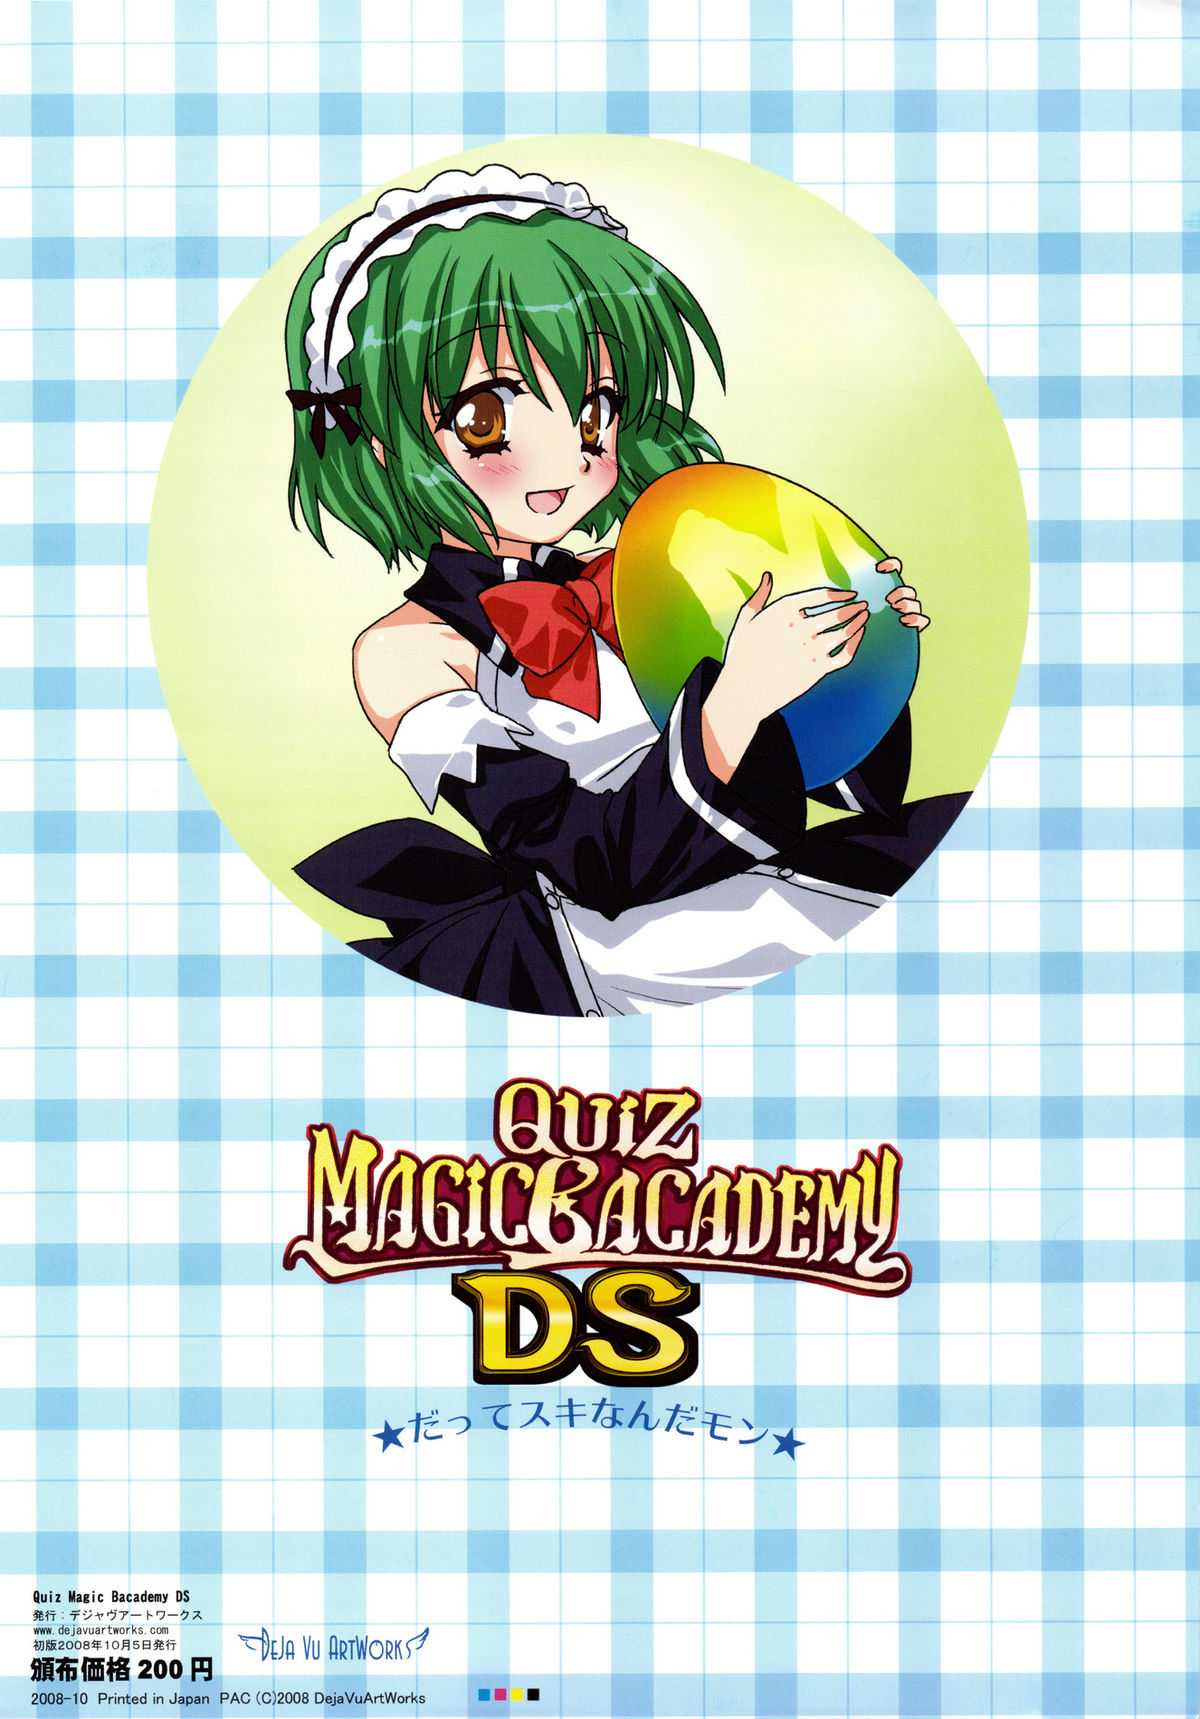 [Dejavu] QUIZ MAGIC BACADEMY DS (Quiz Magical Academy) [Dejavu] QUIZ MAGIC BACADEMY DS (クイズマジックアカデミー)